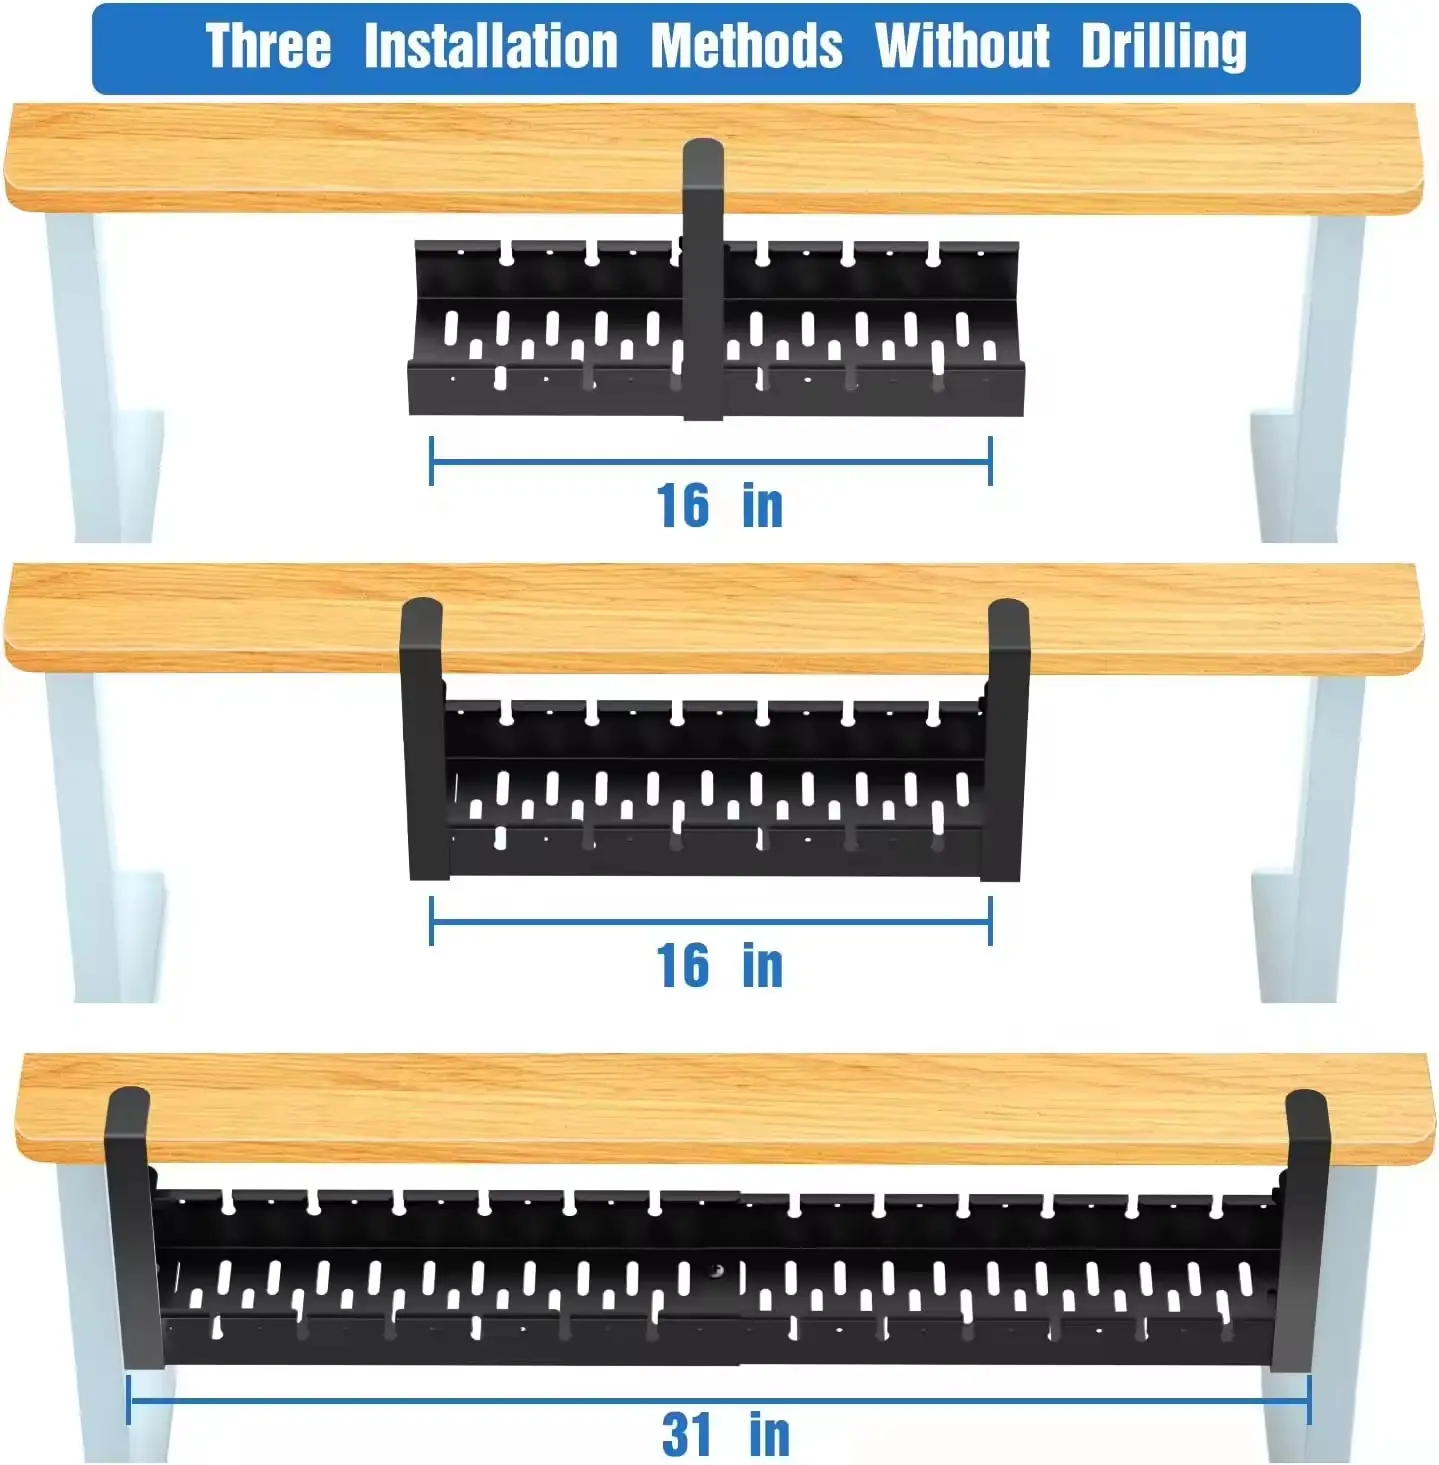 Sıcak daldırma galvanizli elektrik galvanizli genişletilebilir altında masa kablo yönetimi tepsi kablo yönetimi kemer kelepçe ile kapak